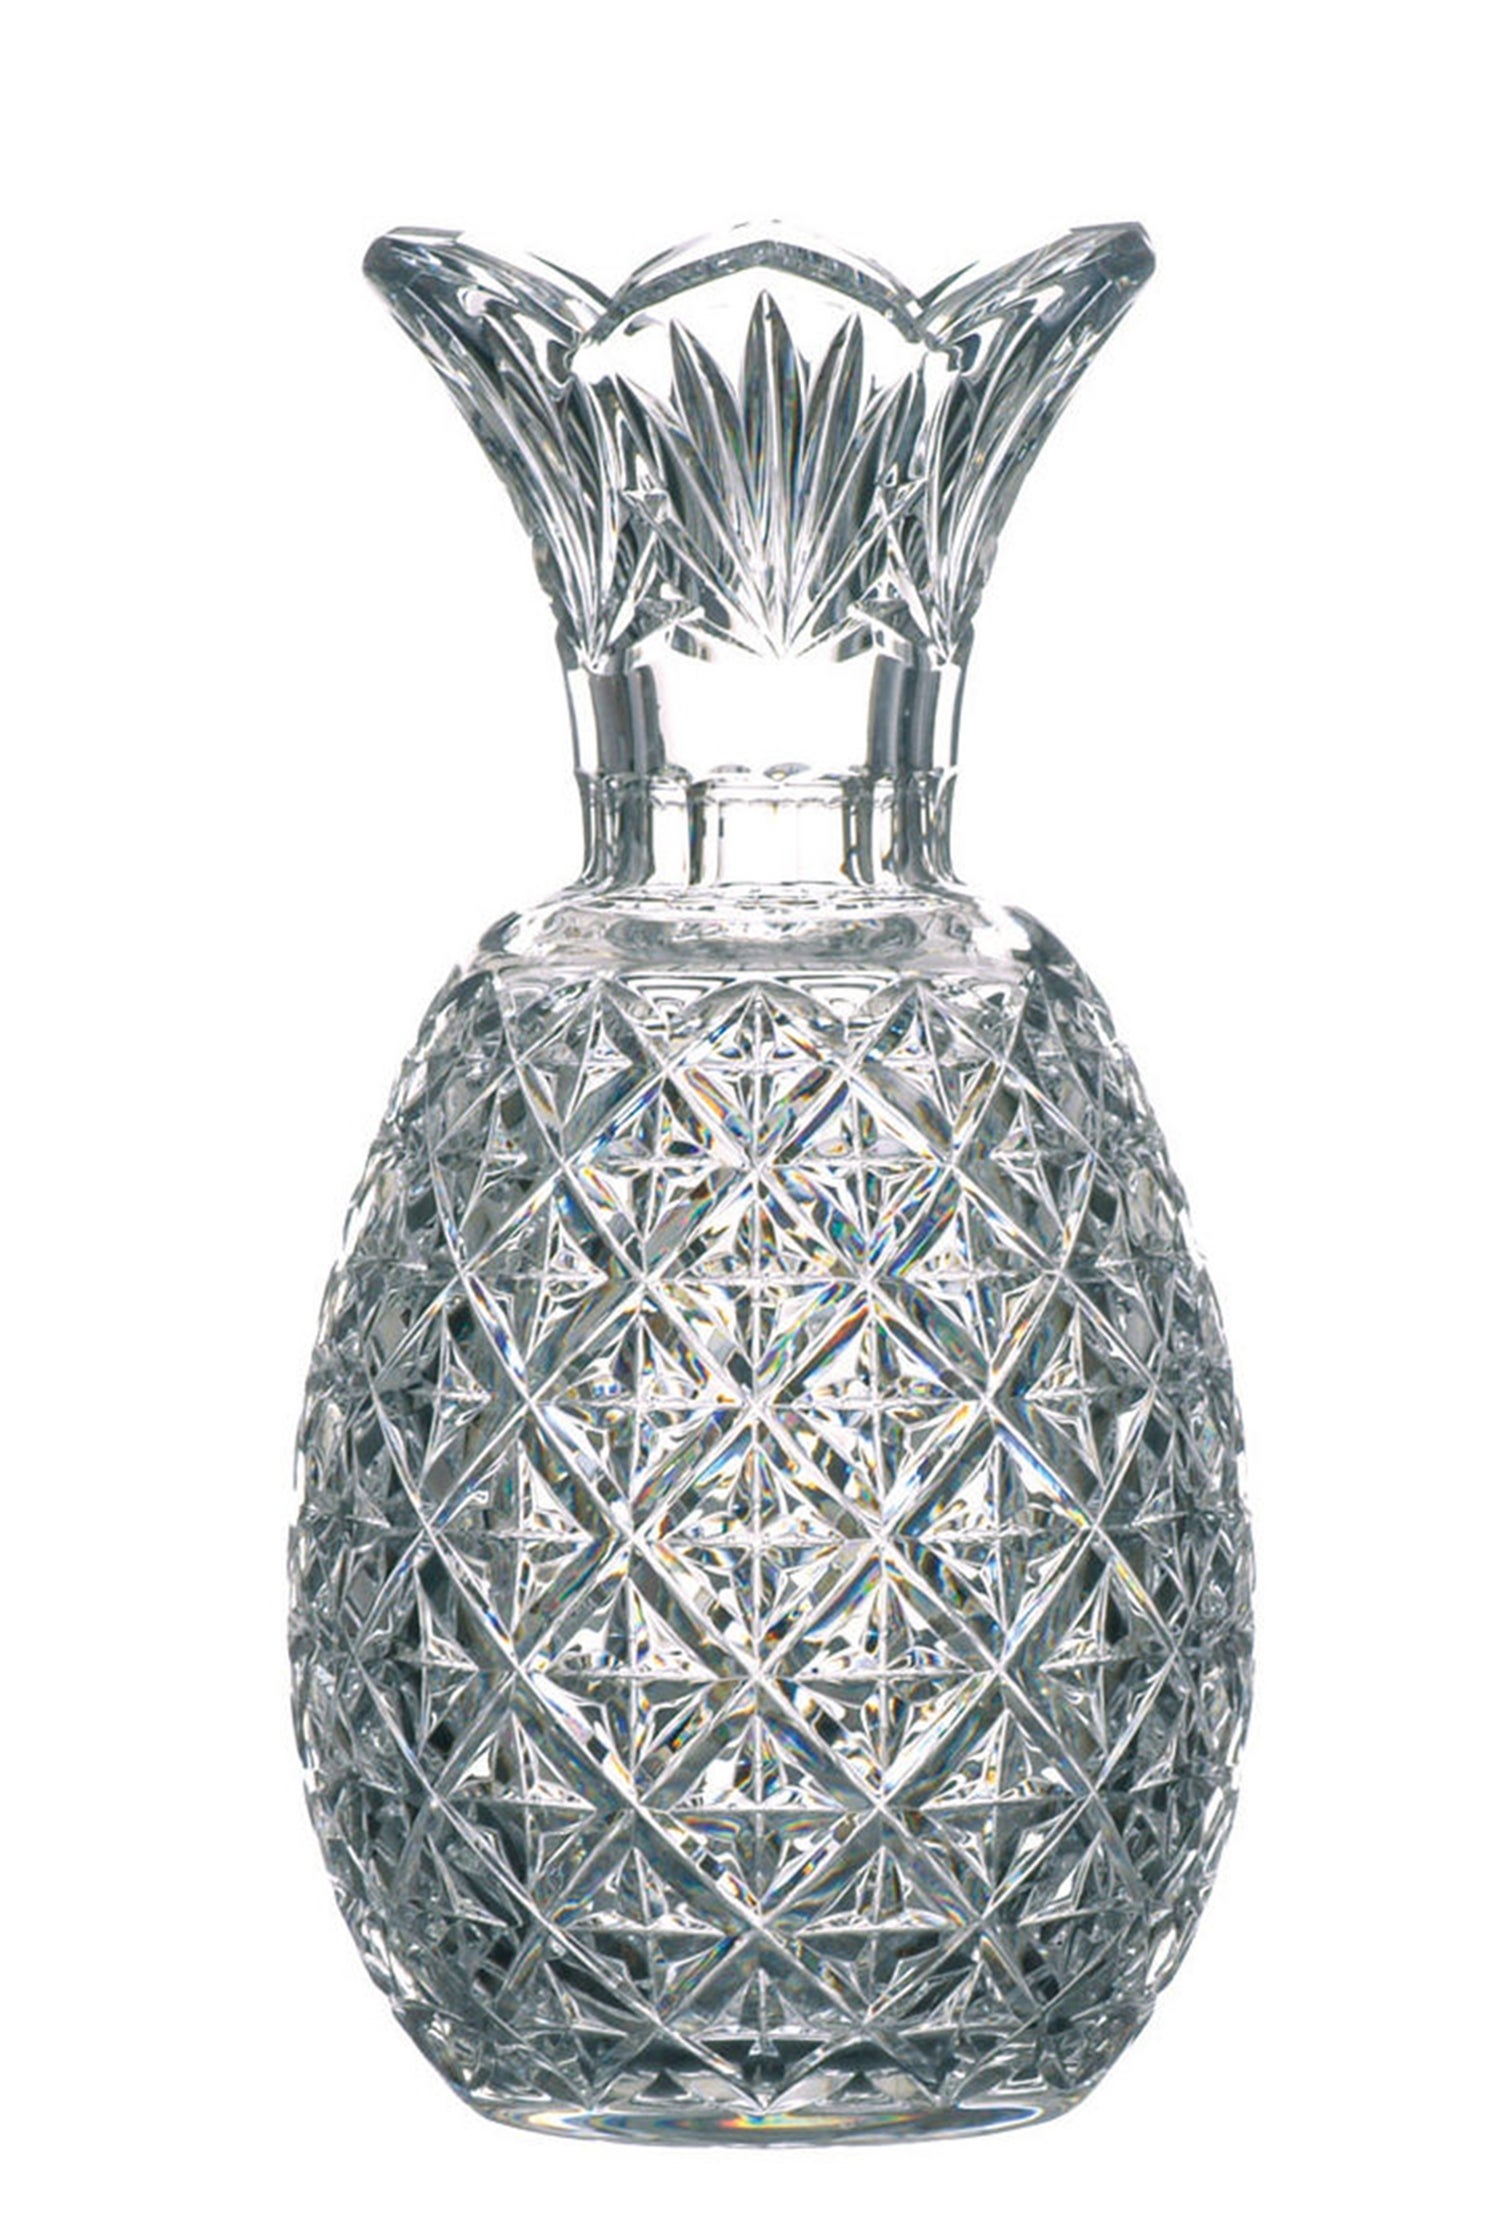 Waterford Crystal Pineapple Vase